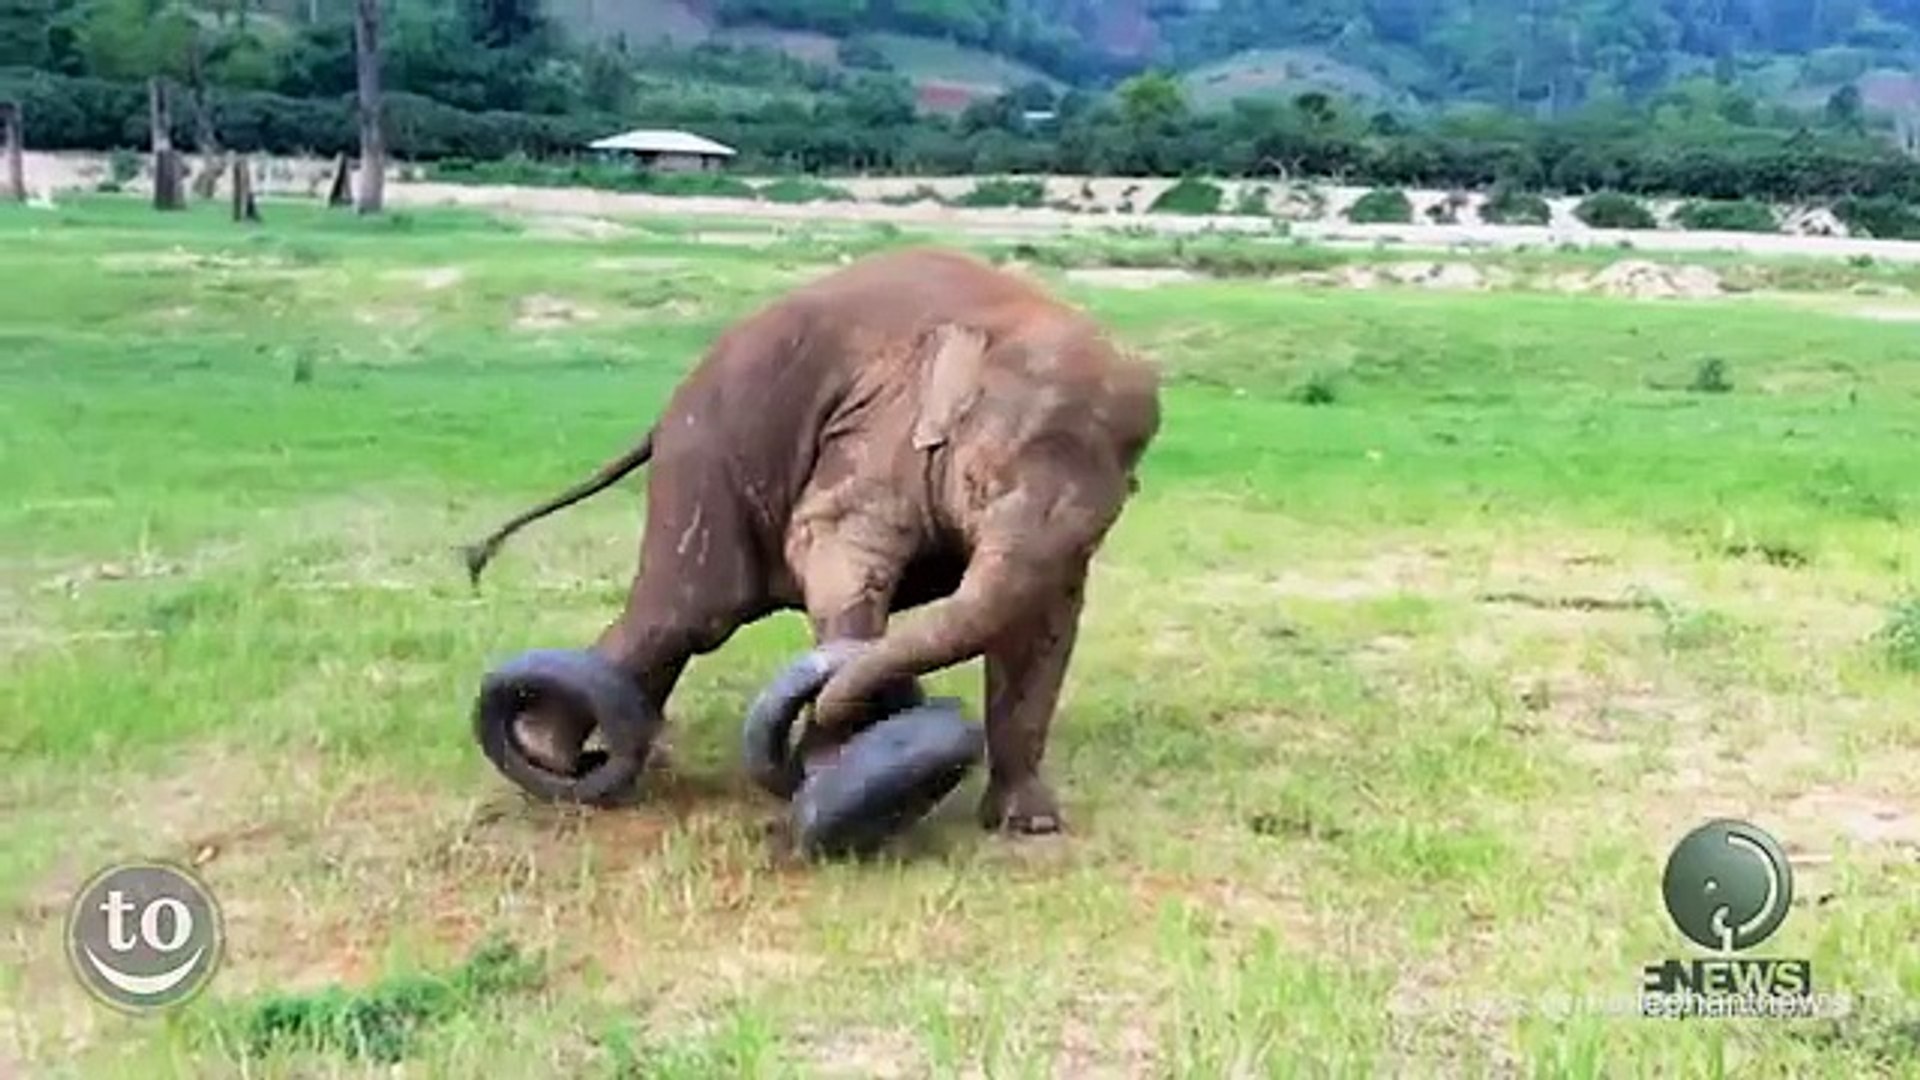 2 min de pur bonheur à regarder ce bébé éléphant jouer! - Vidéo Dailymotion